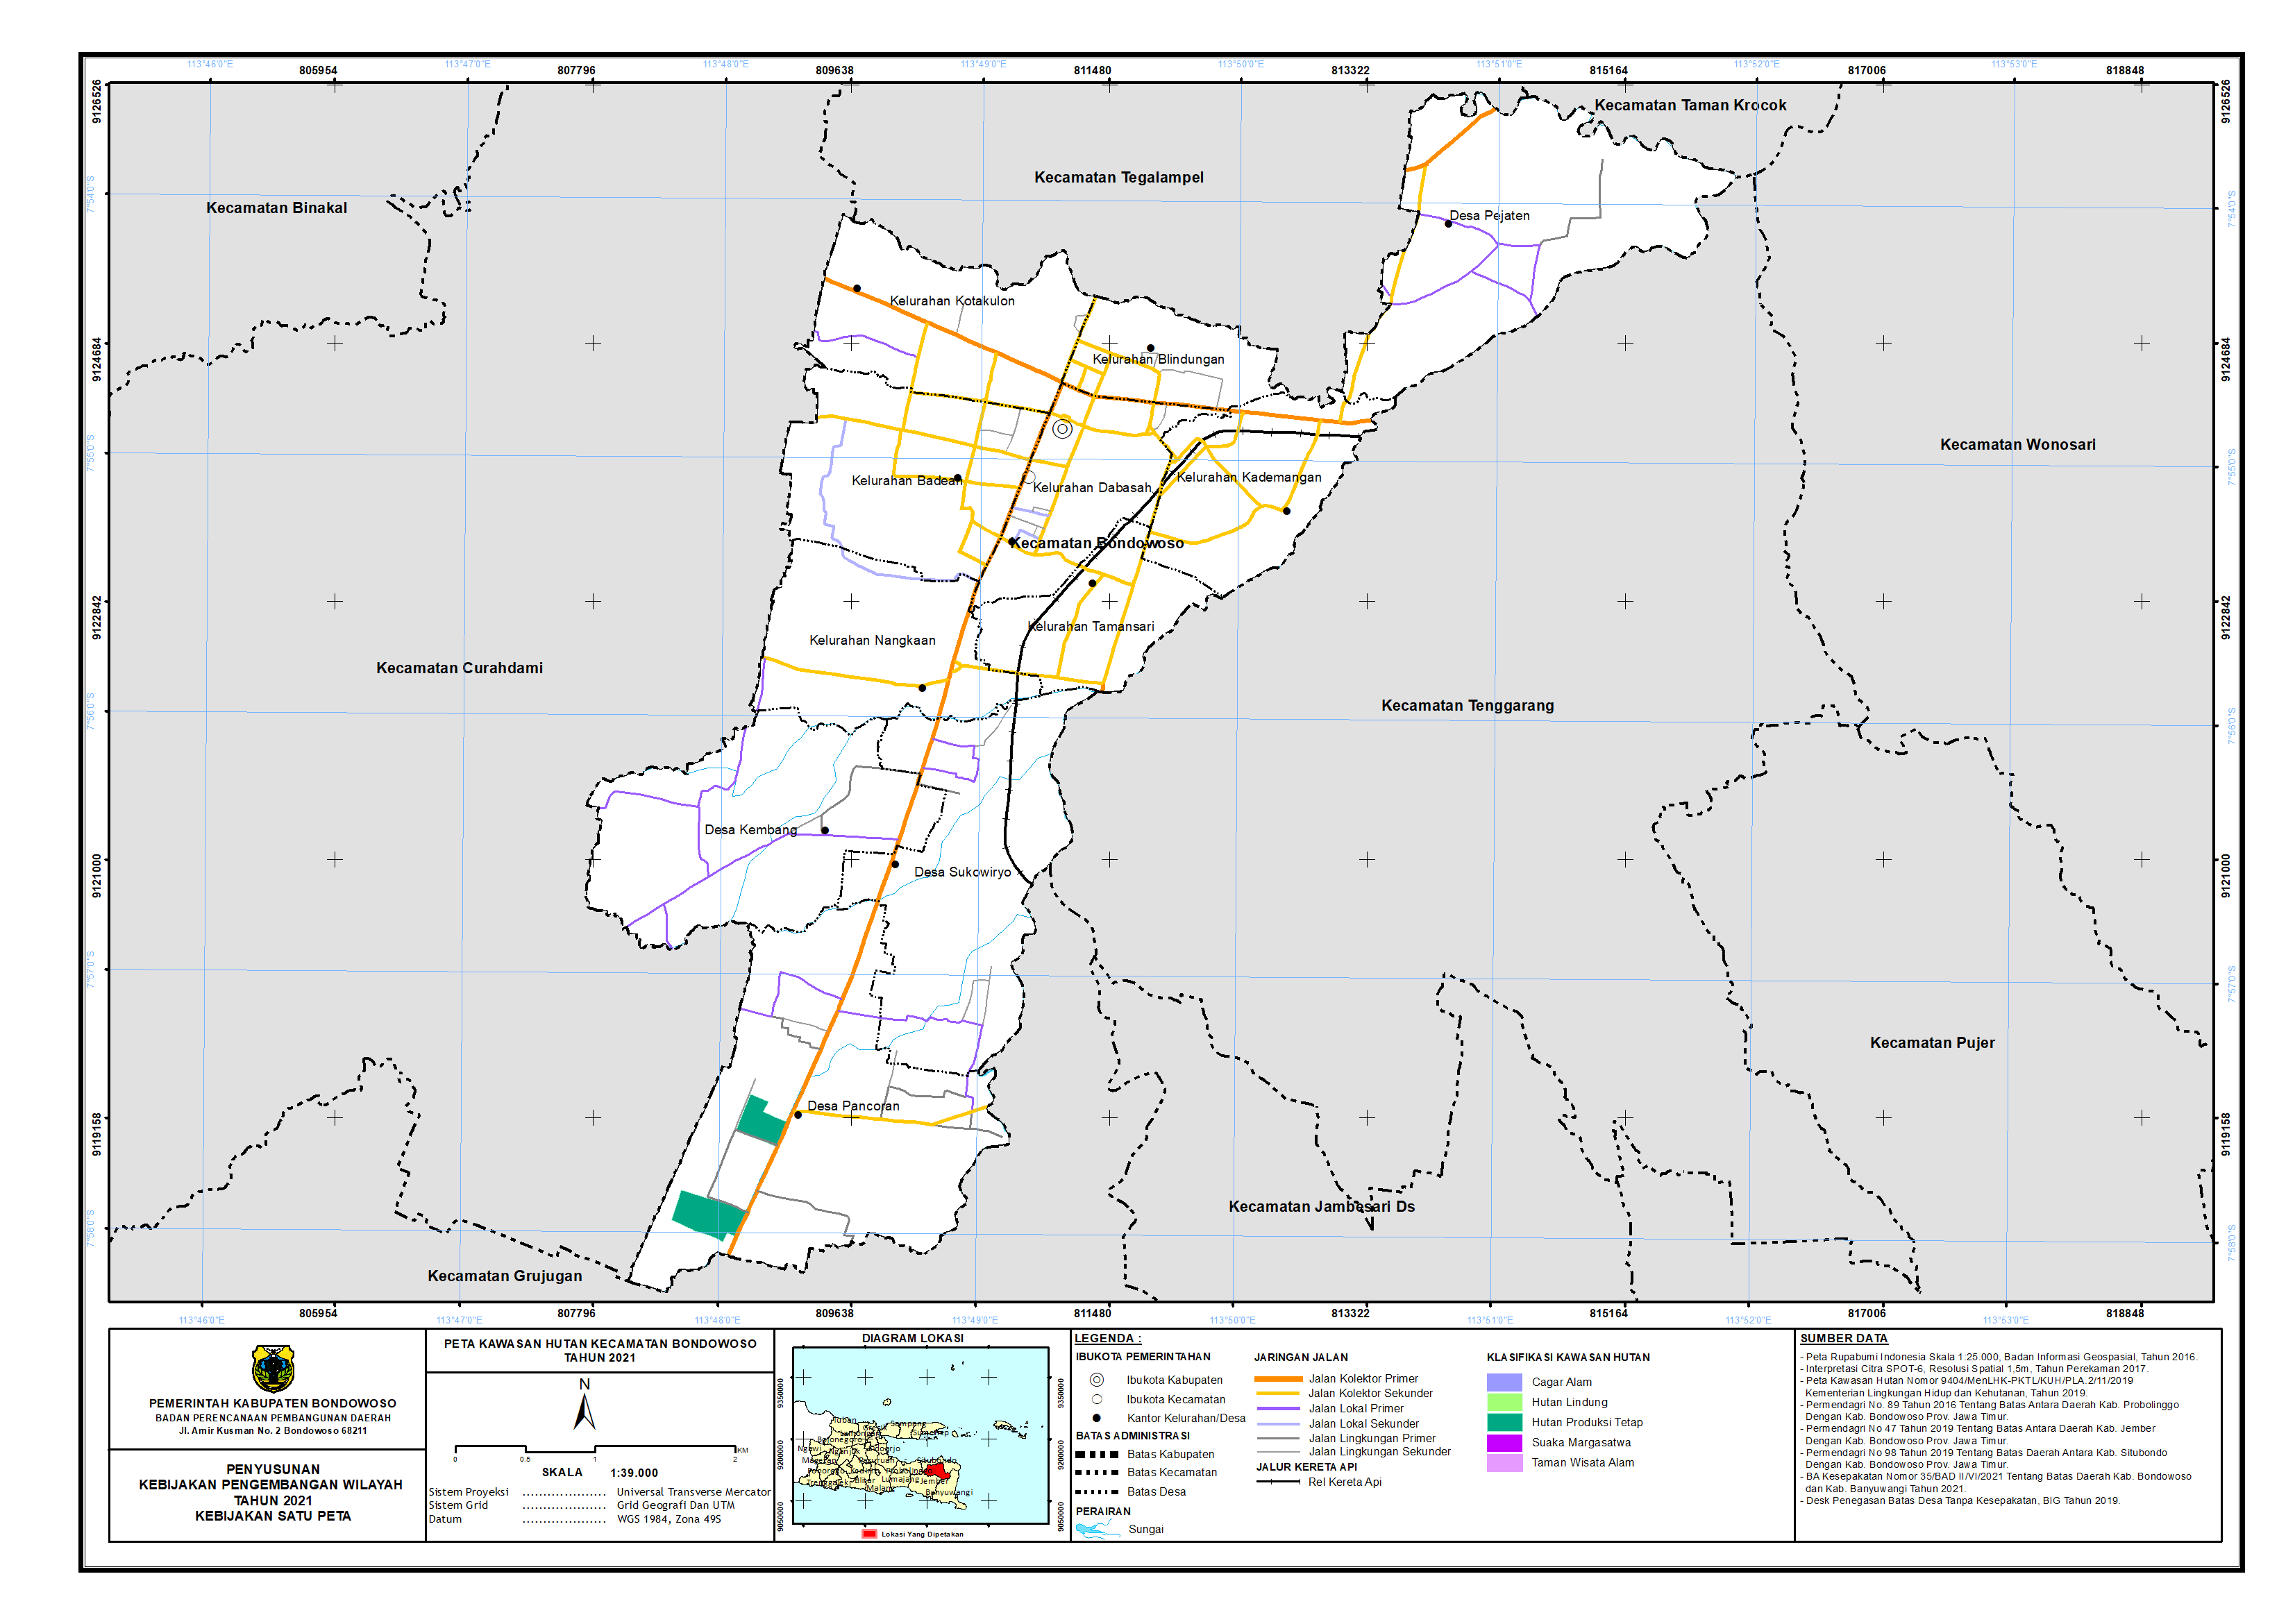 Peta Kawasan Hutan Kecamatan Bondowoso.png